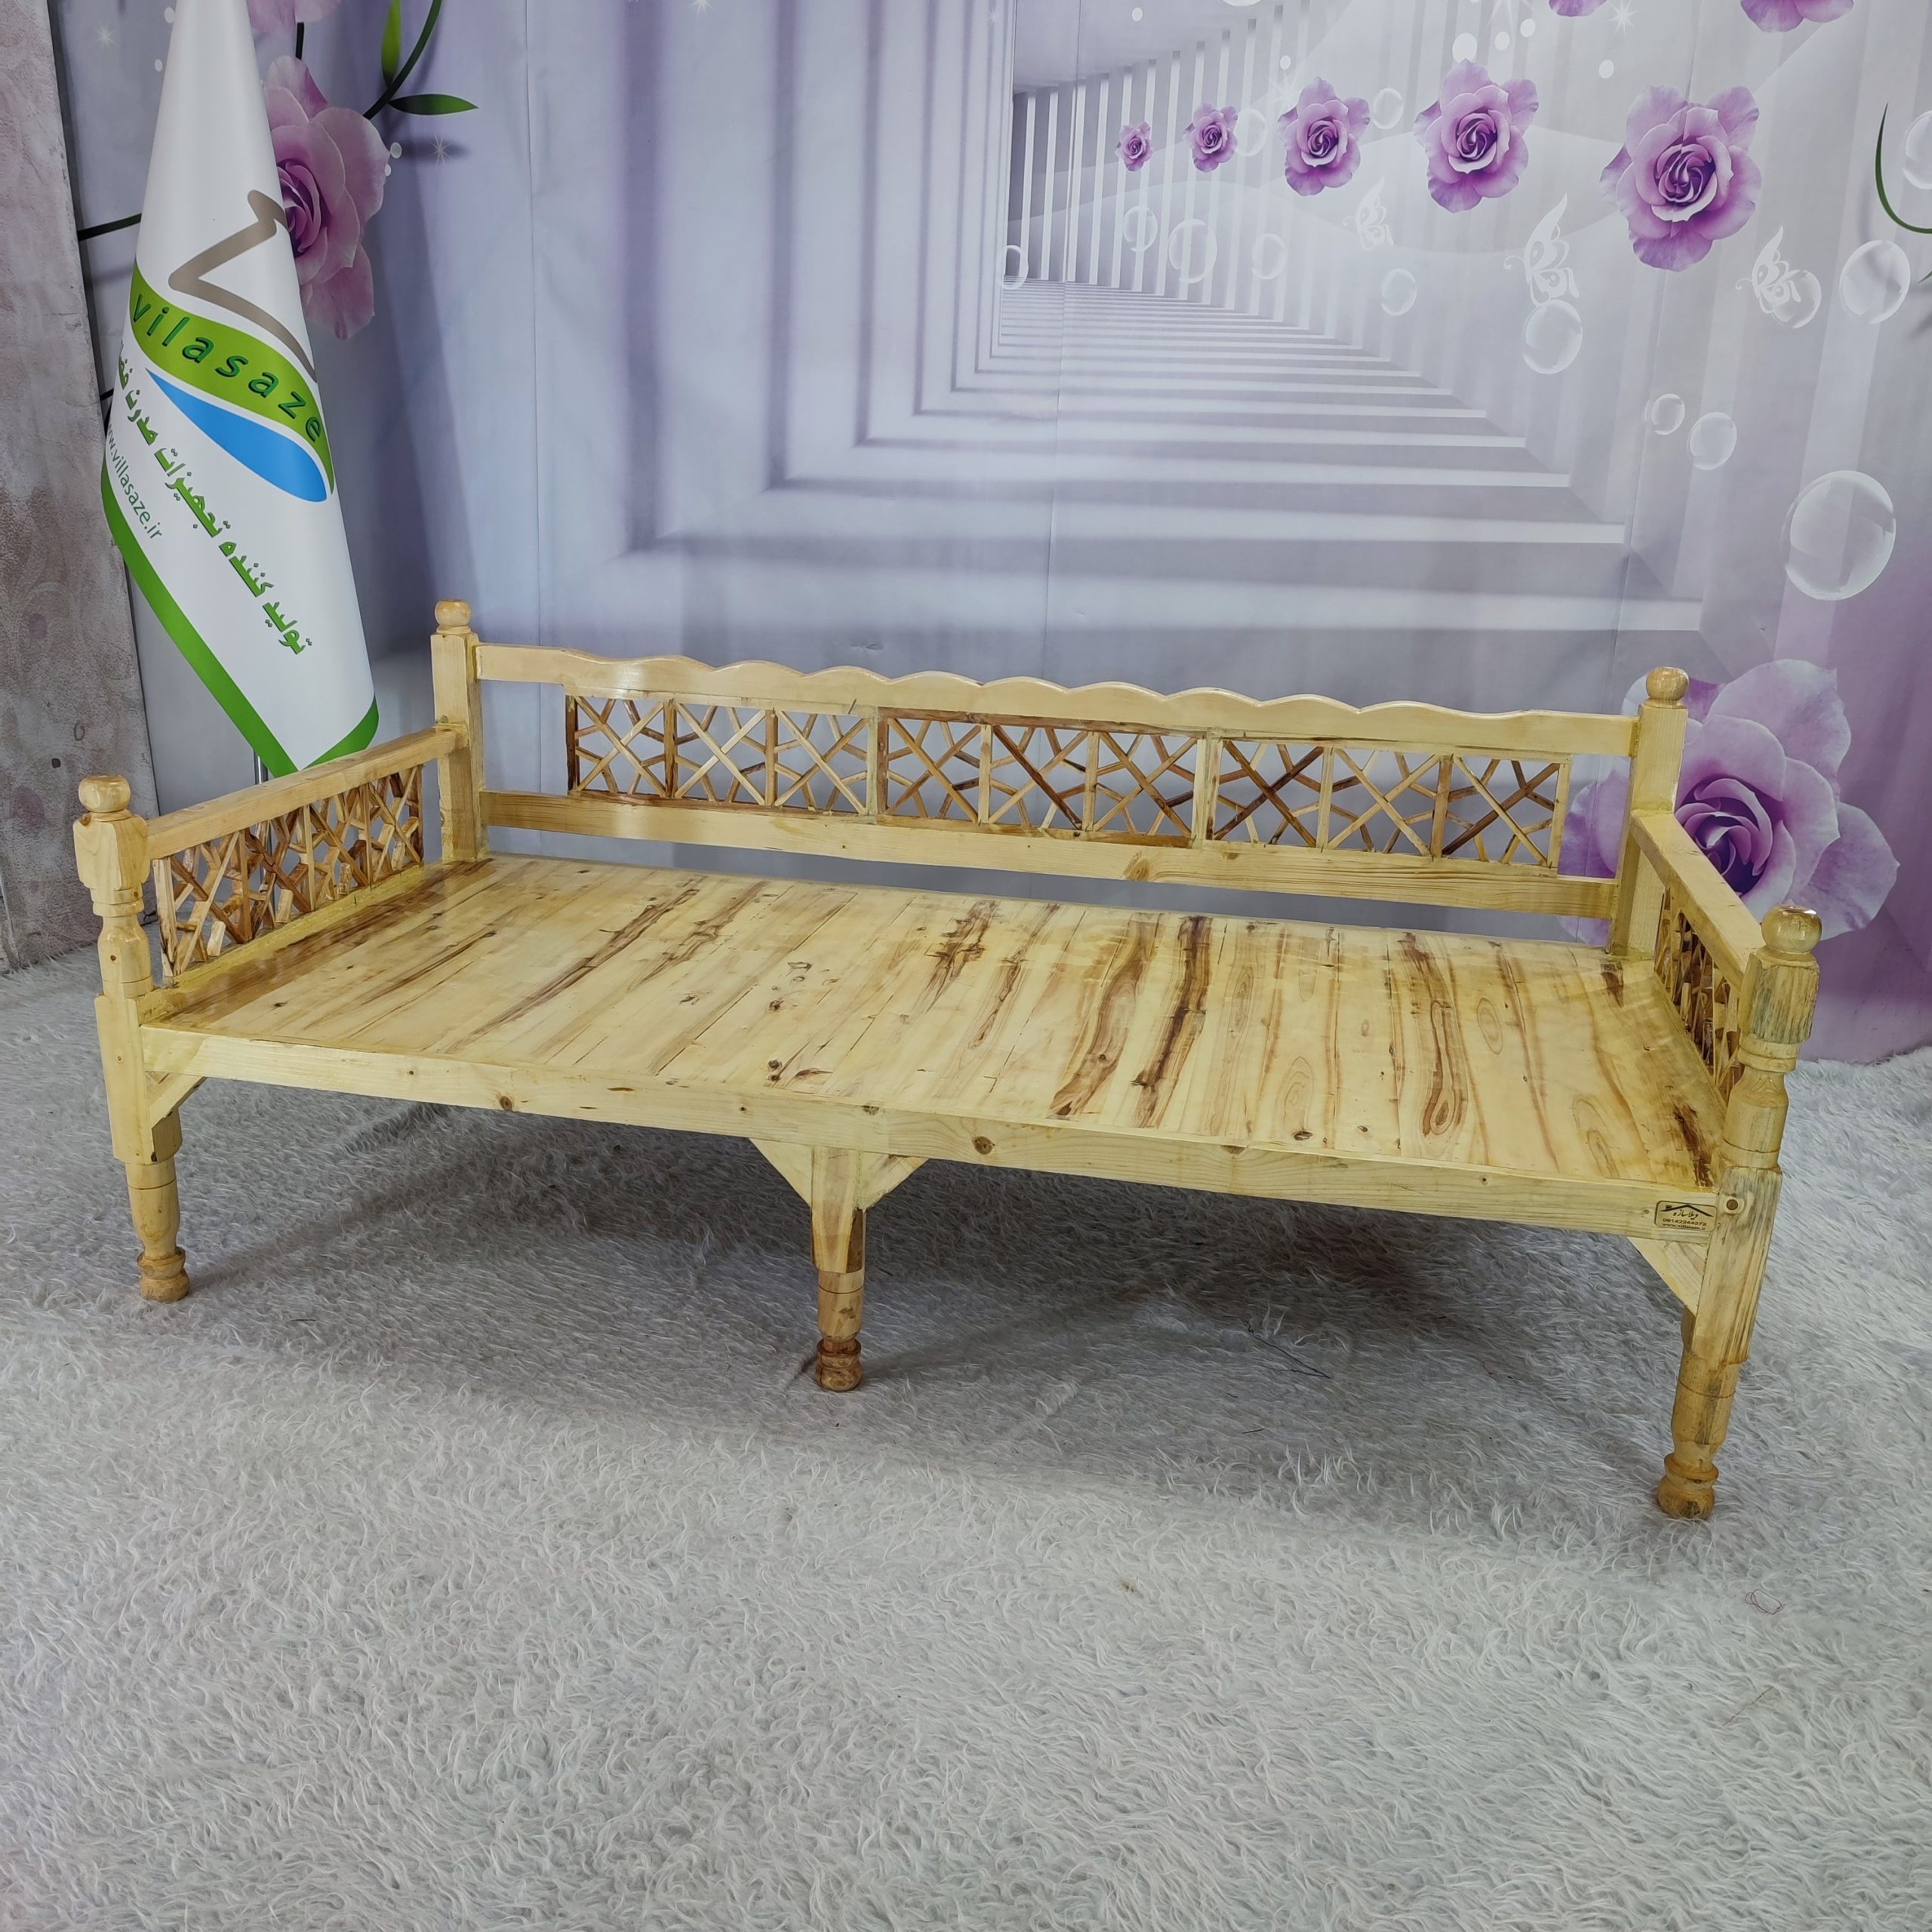 تخت سنتی چوبی